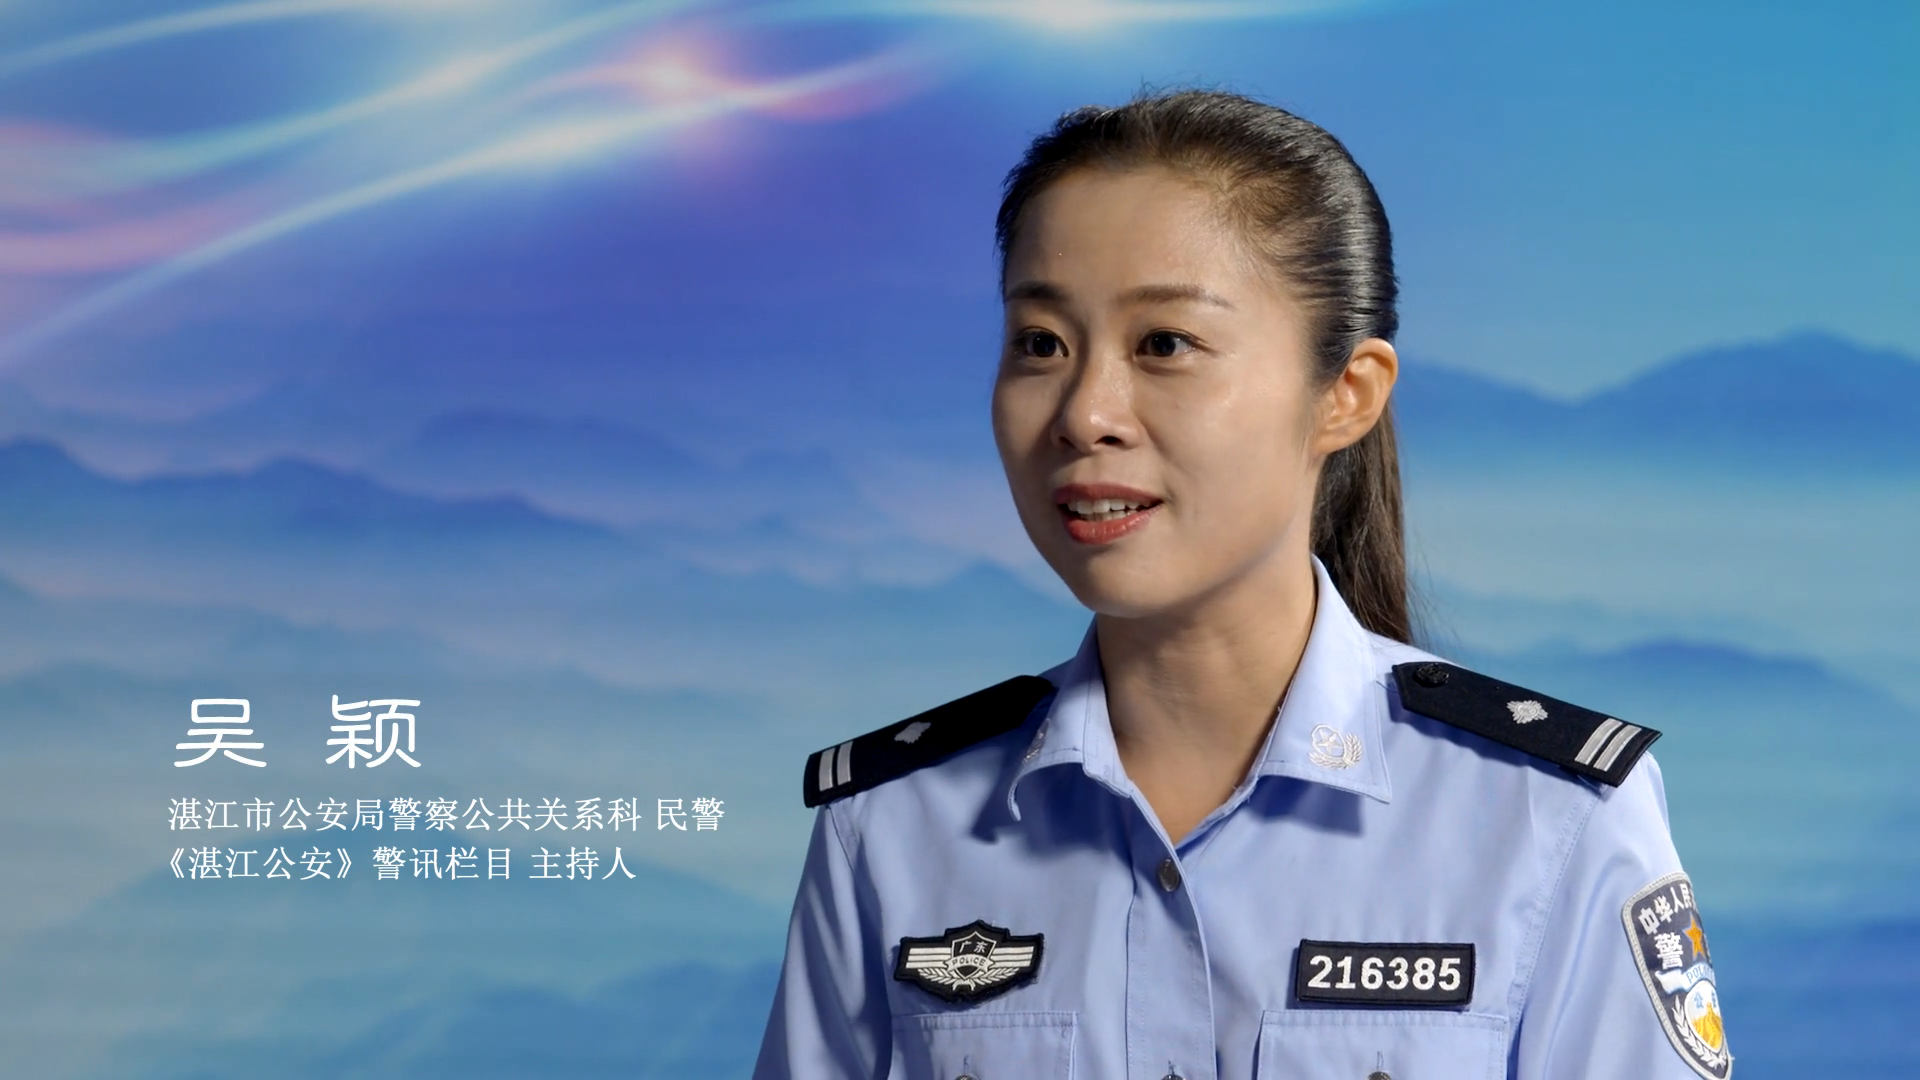 湛江市公安局警察公共关系科吴颖视频